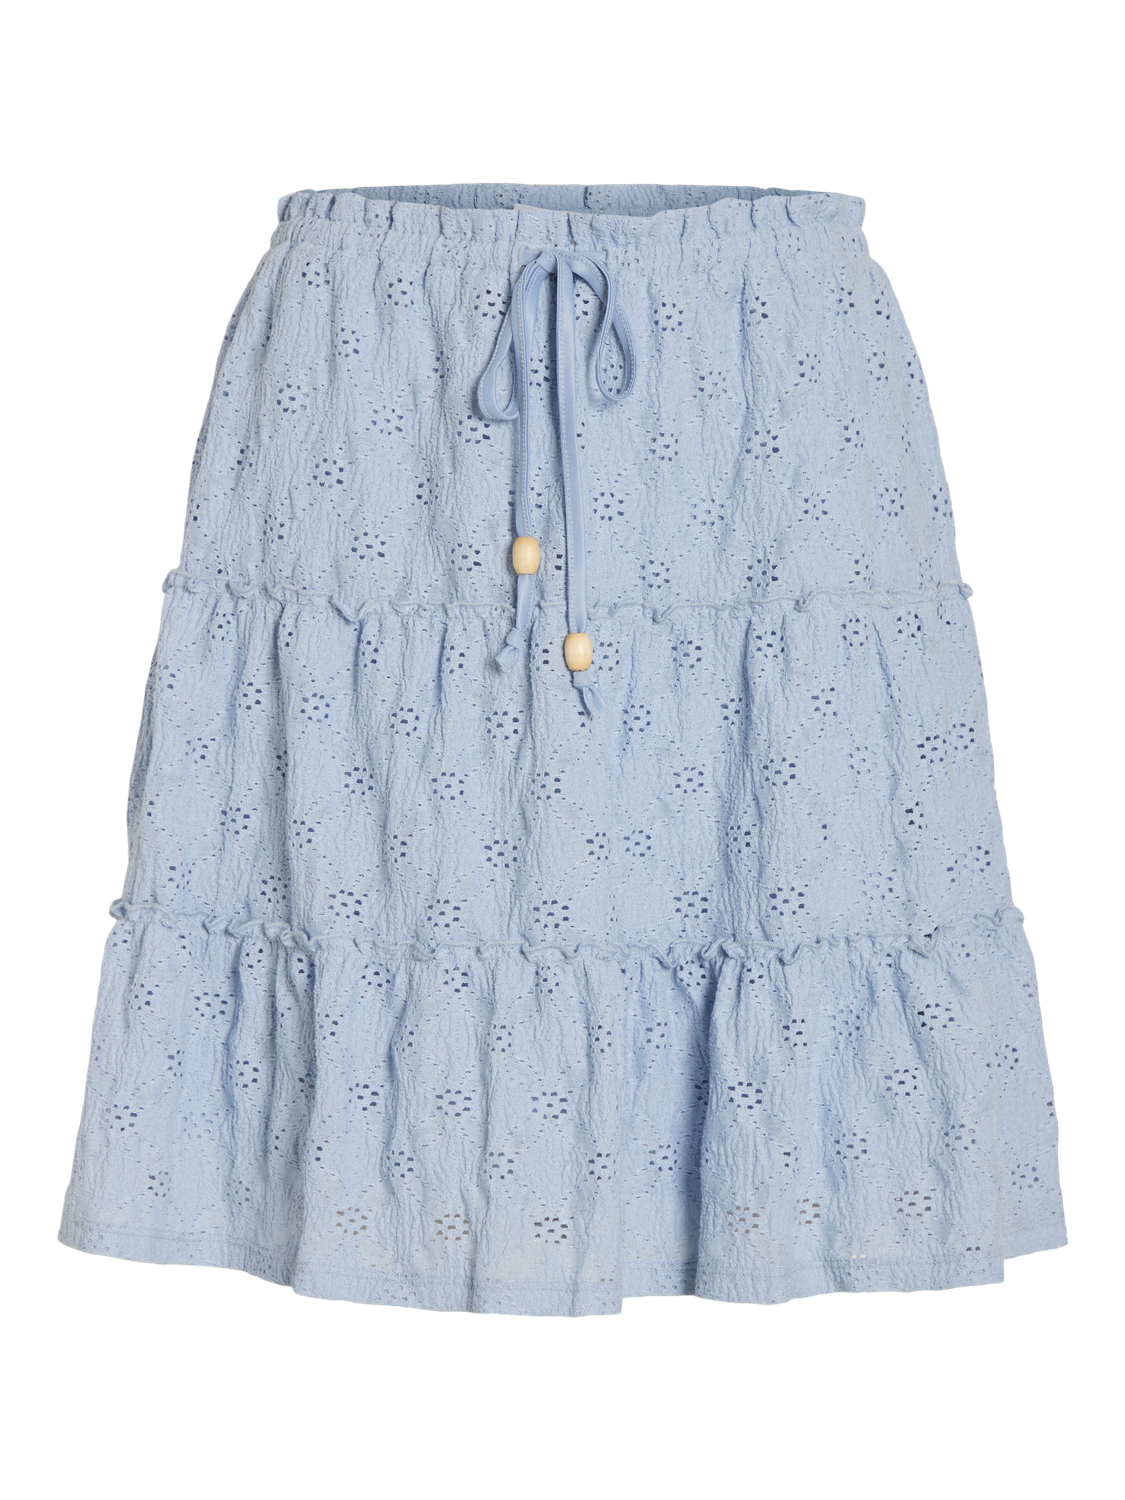 VIMELANIE Skirt - Kentucky Blue